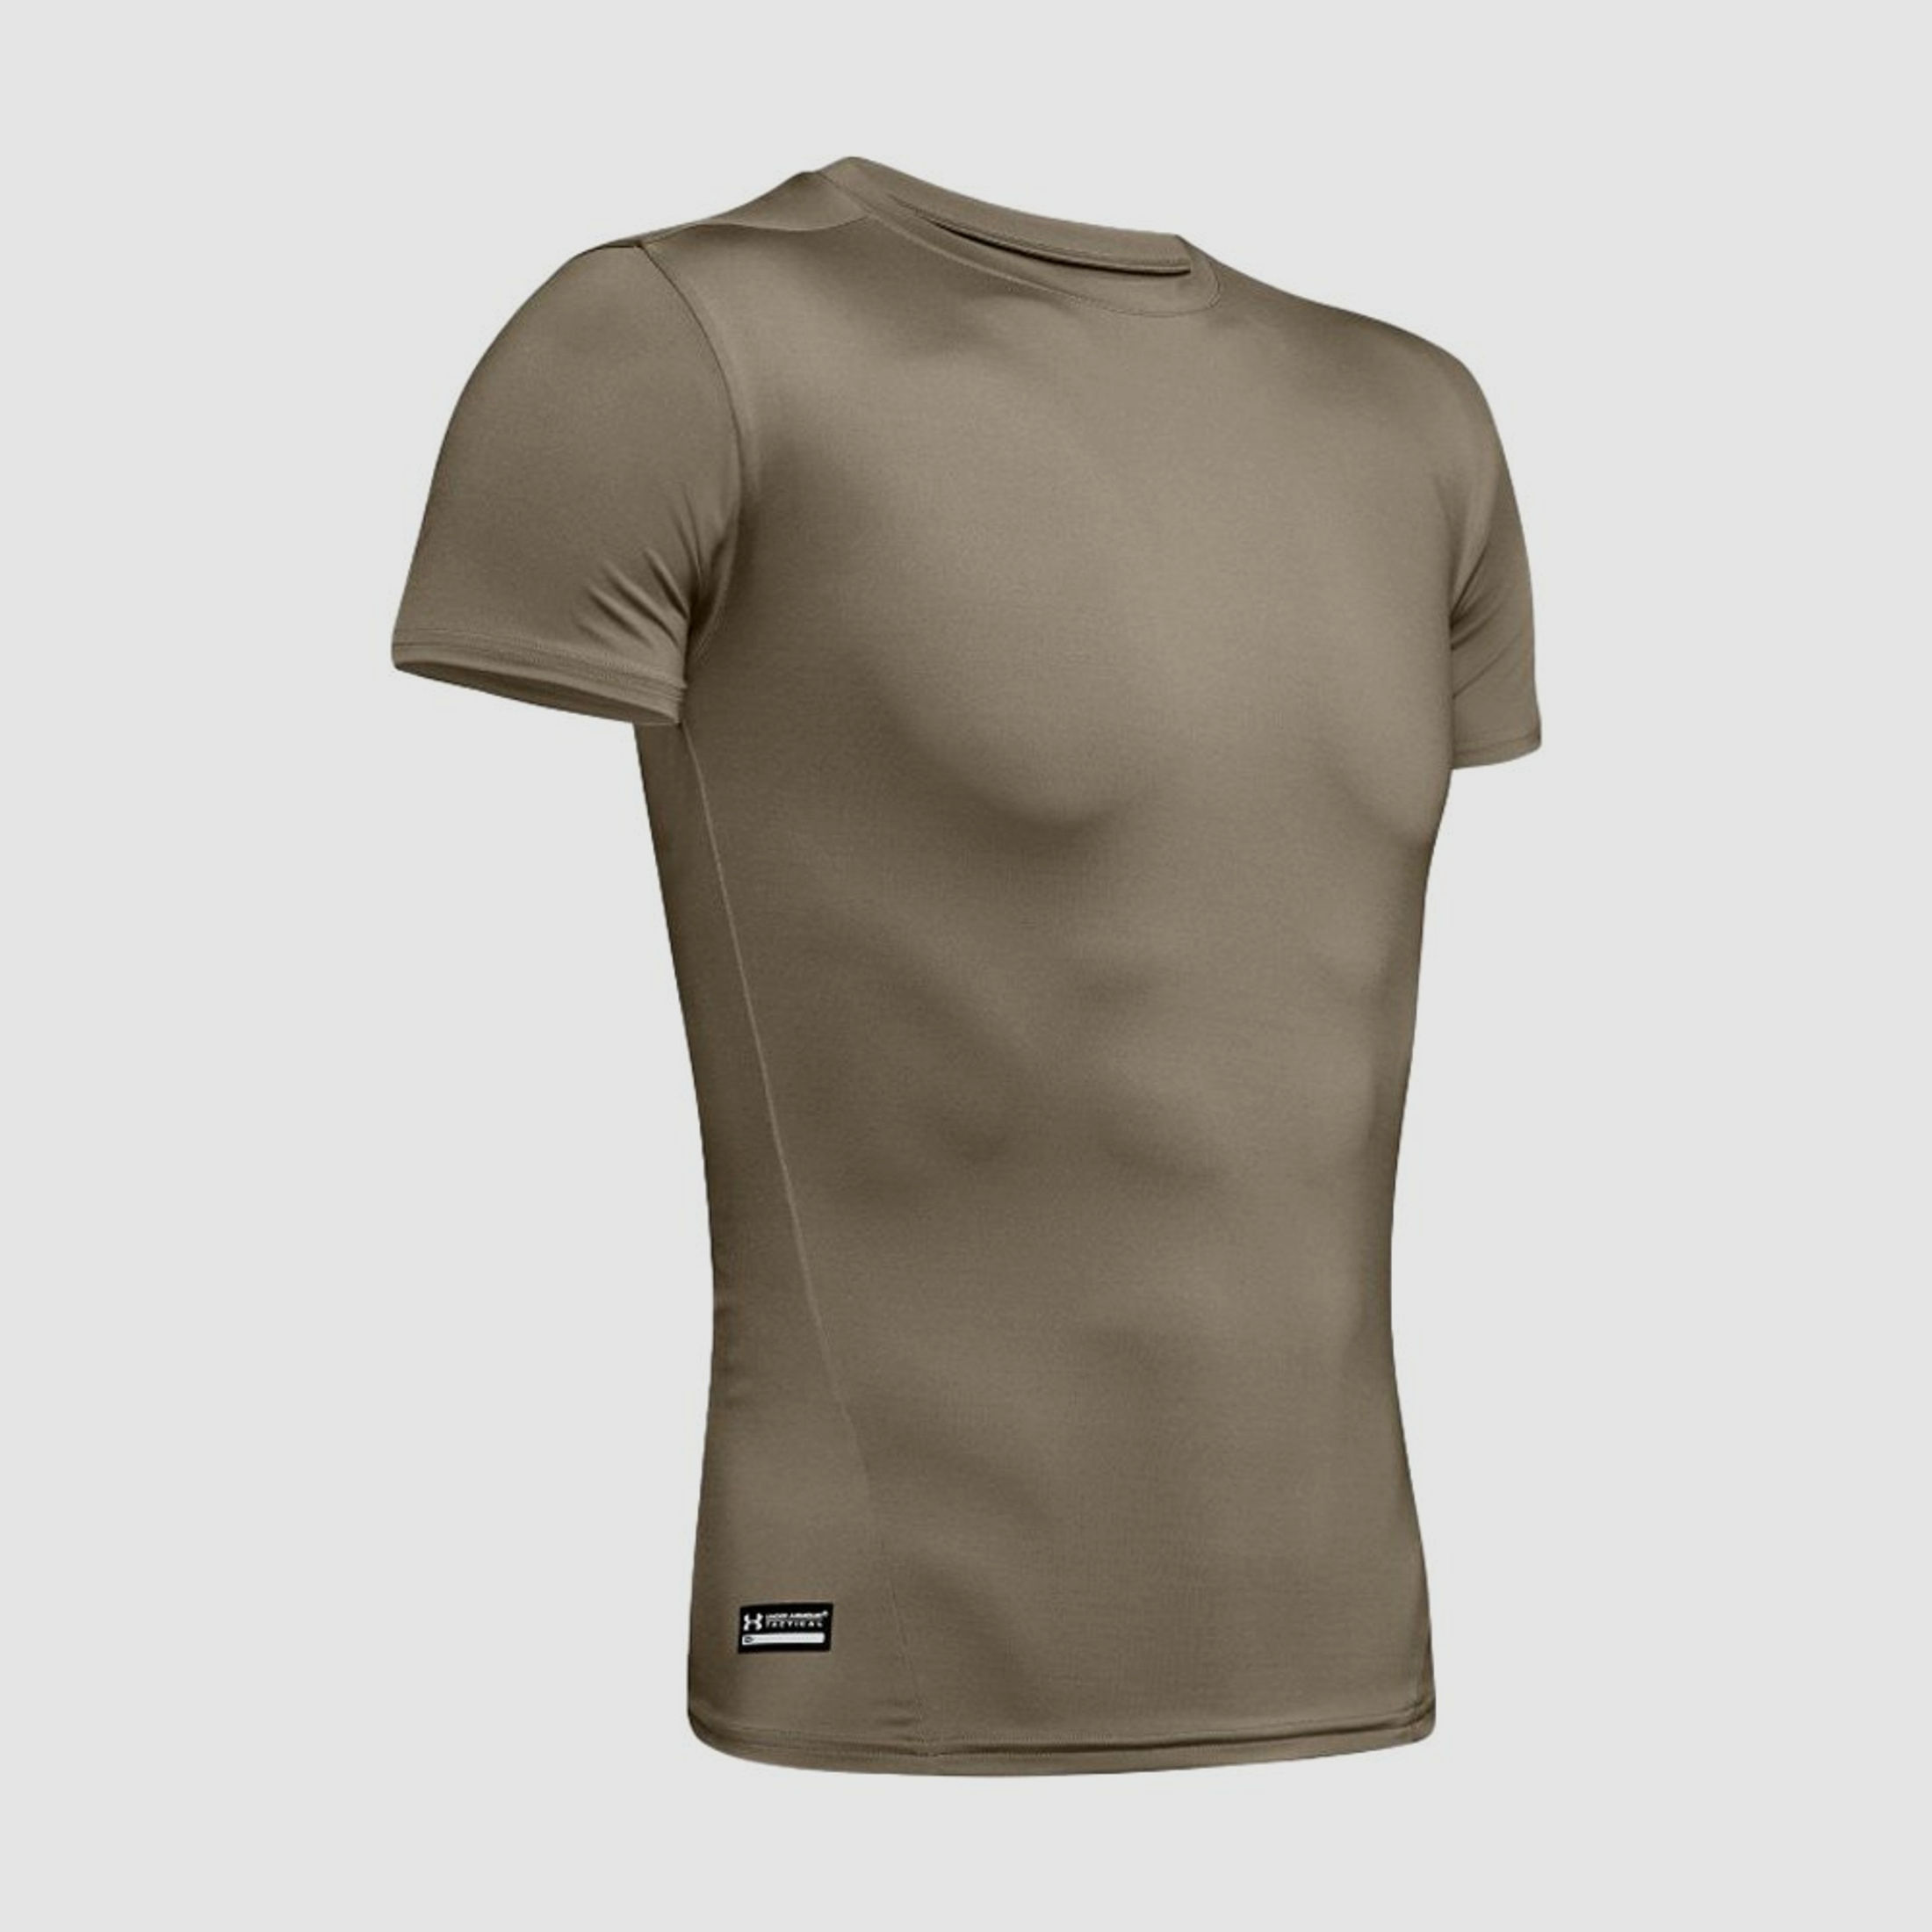 Under Armour HeatGear Tactical Kompressions T-Shirt Federal Tan M